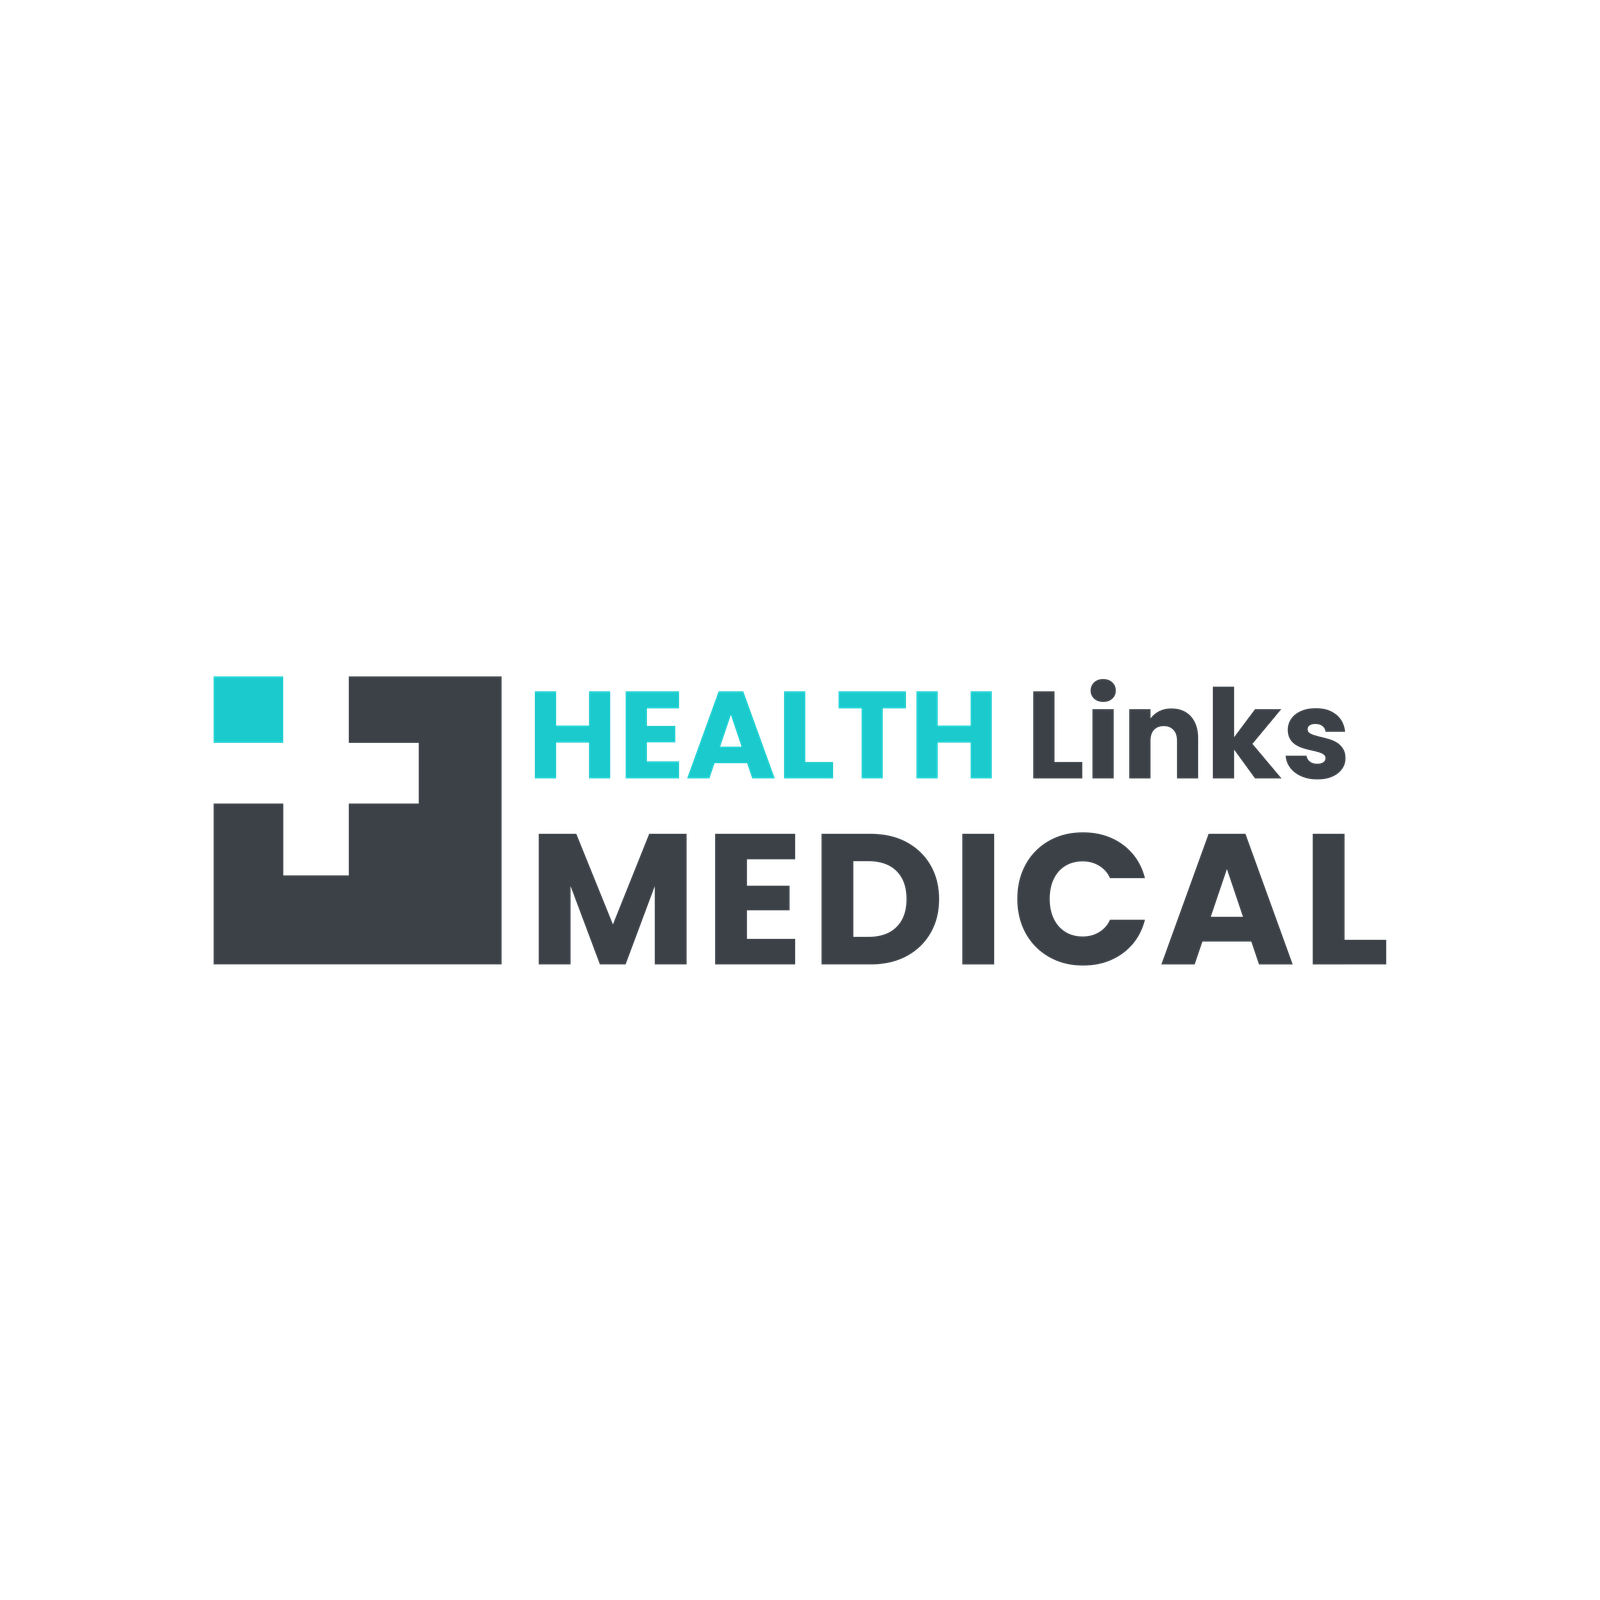 healthlinksmedical.com